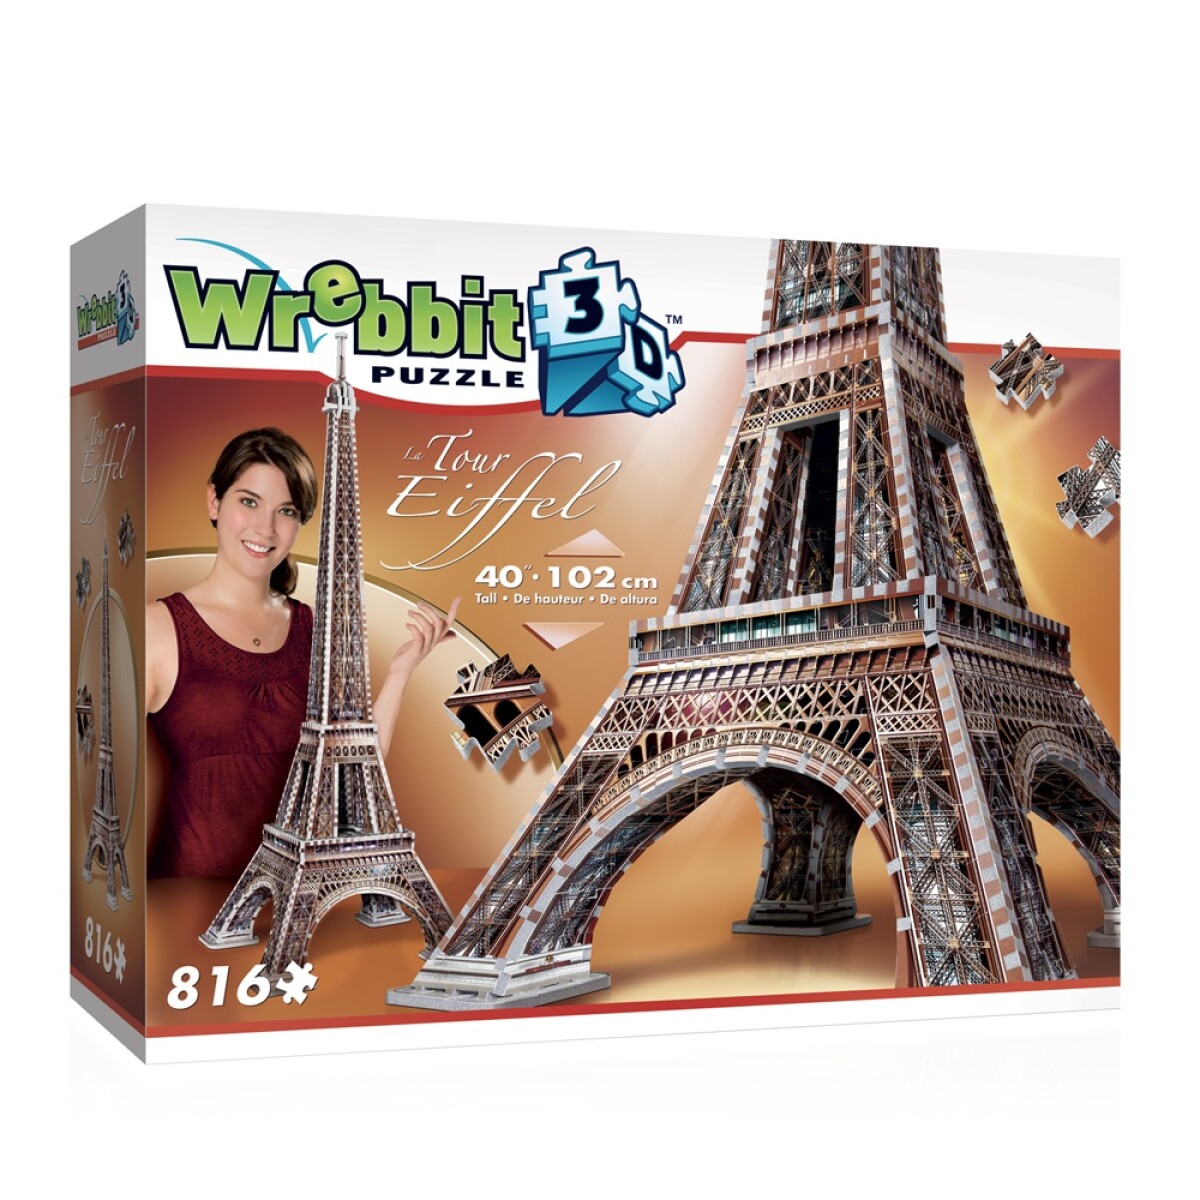 Puzzle 3D Maqueta de la Torre Eiffel en Paris 816 Piezas - Multicolor 